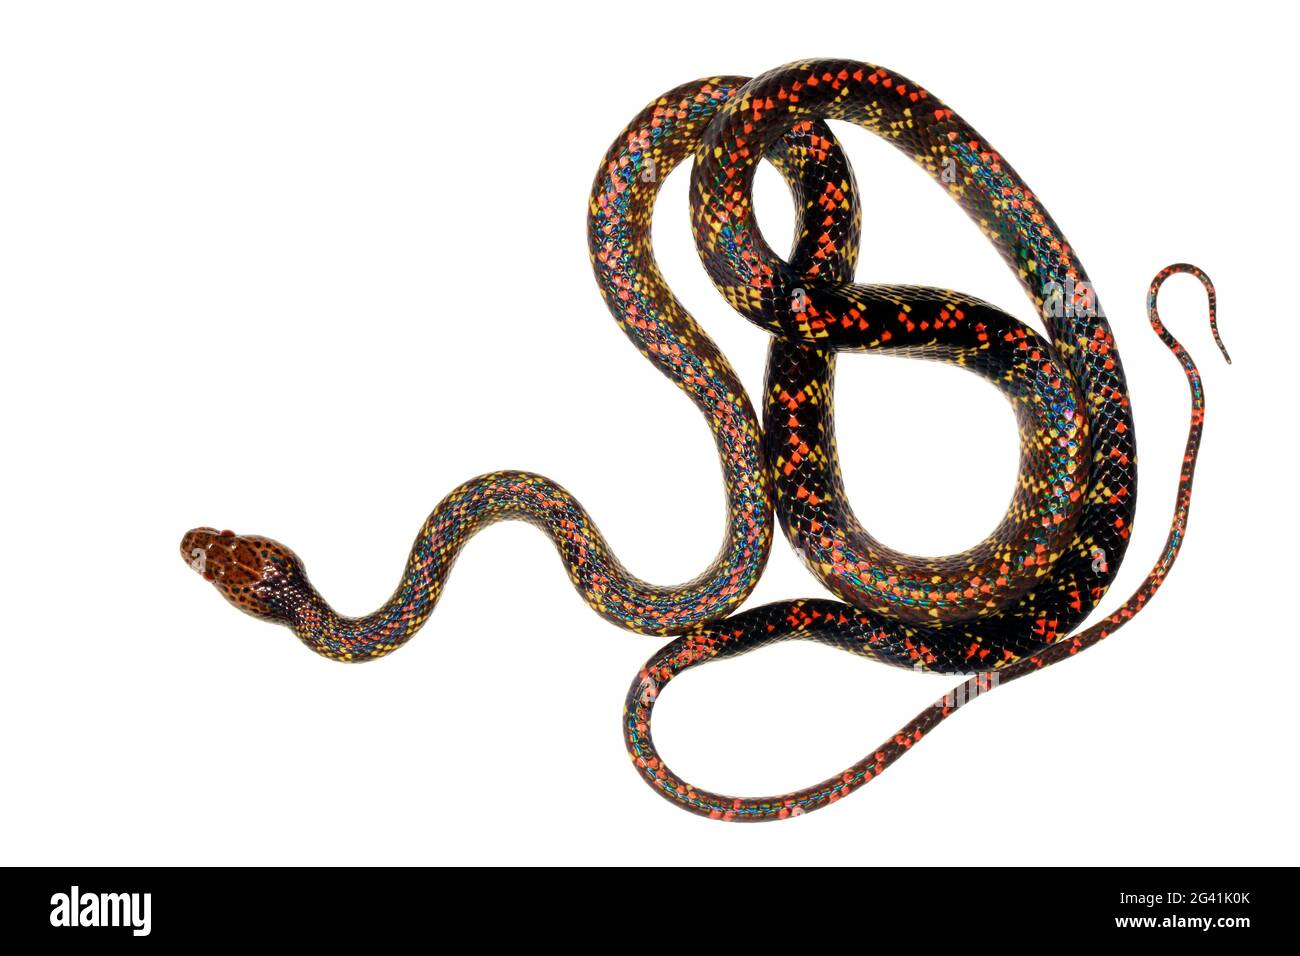 Checkerbelly Snake (Siphlophis cervinus), a rare snake from Orellana province, Amazonian Ecuador Stock Photo